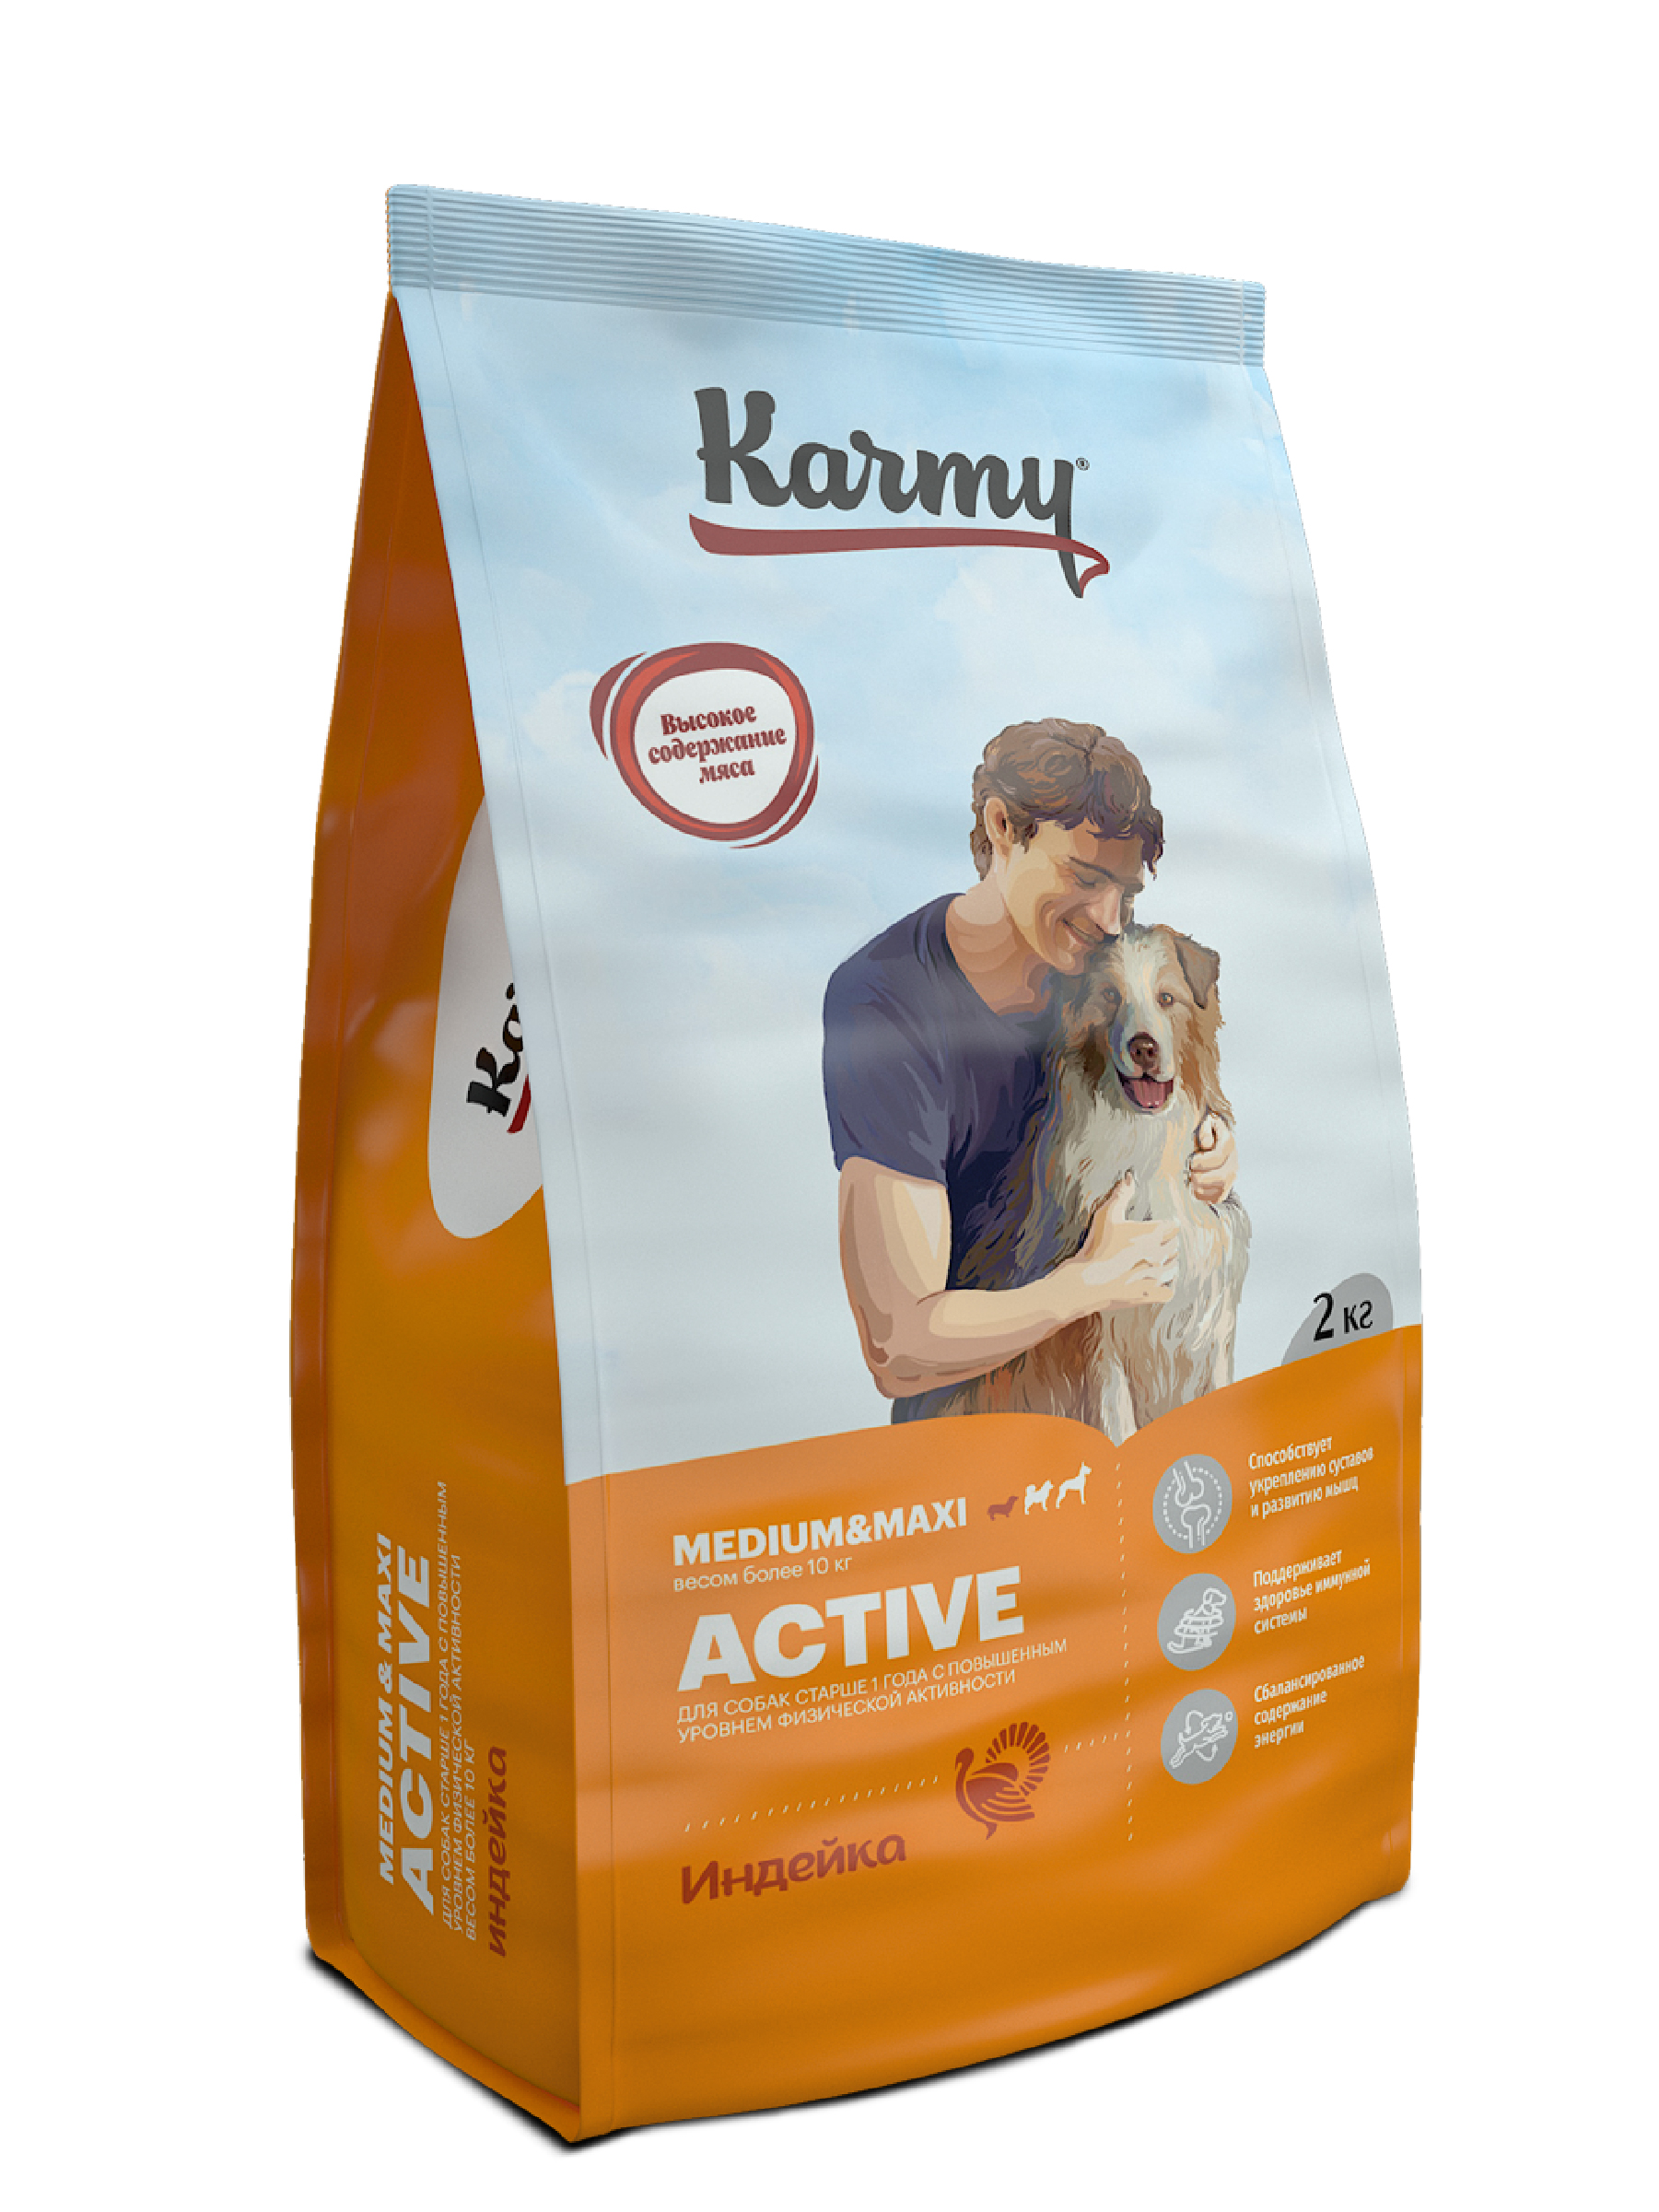 Сухой корм для собак Karmy Active Medium & Maxi, для активных, индейка, 2кг